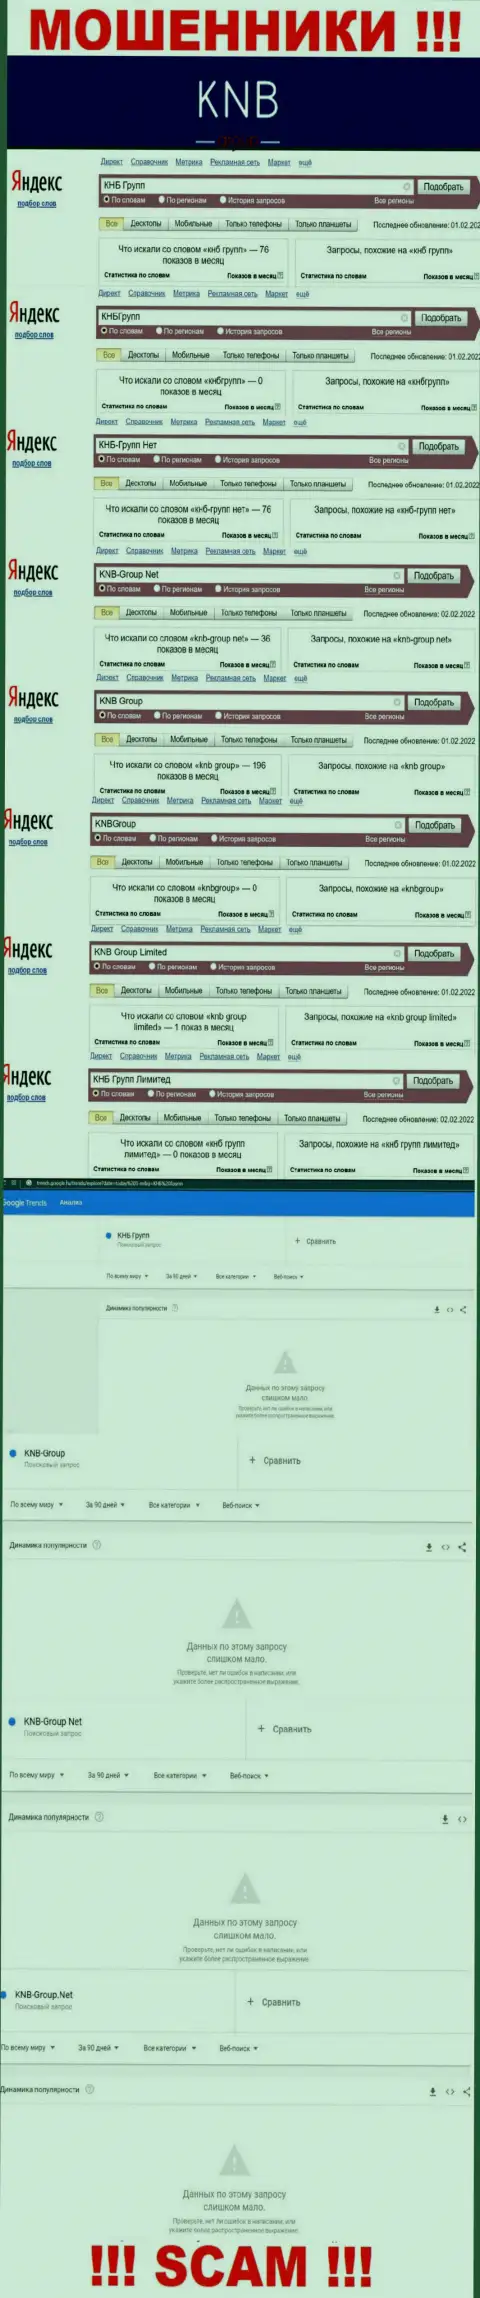 Скриншот результата онлайн-запросов по противоправно действующей компании КНБ Групп